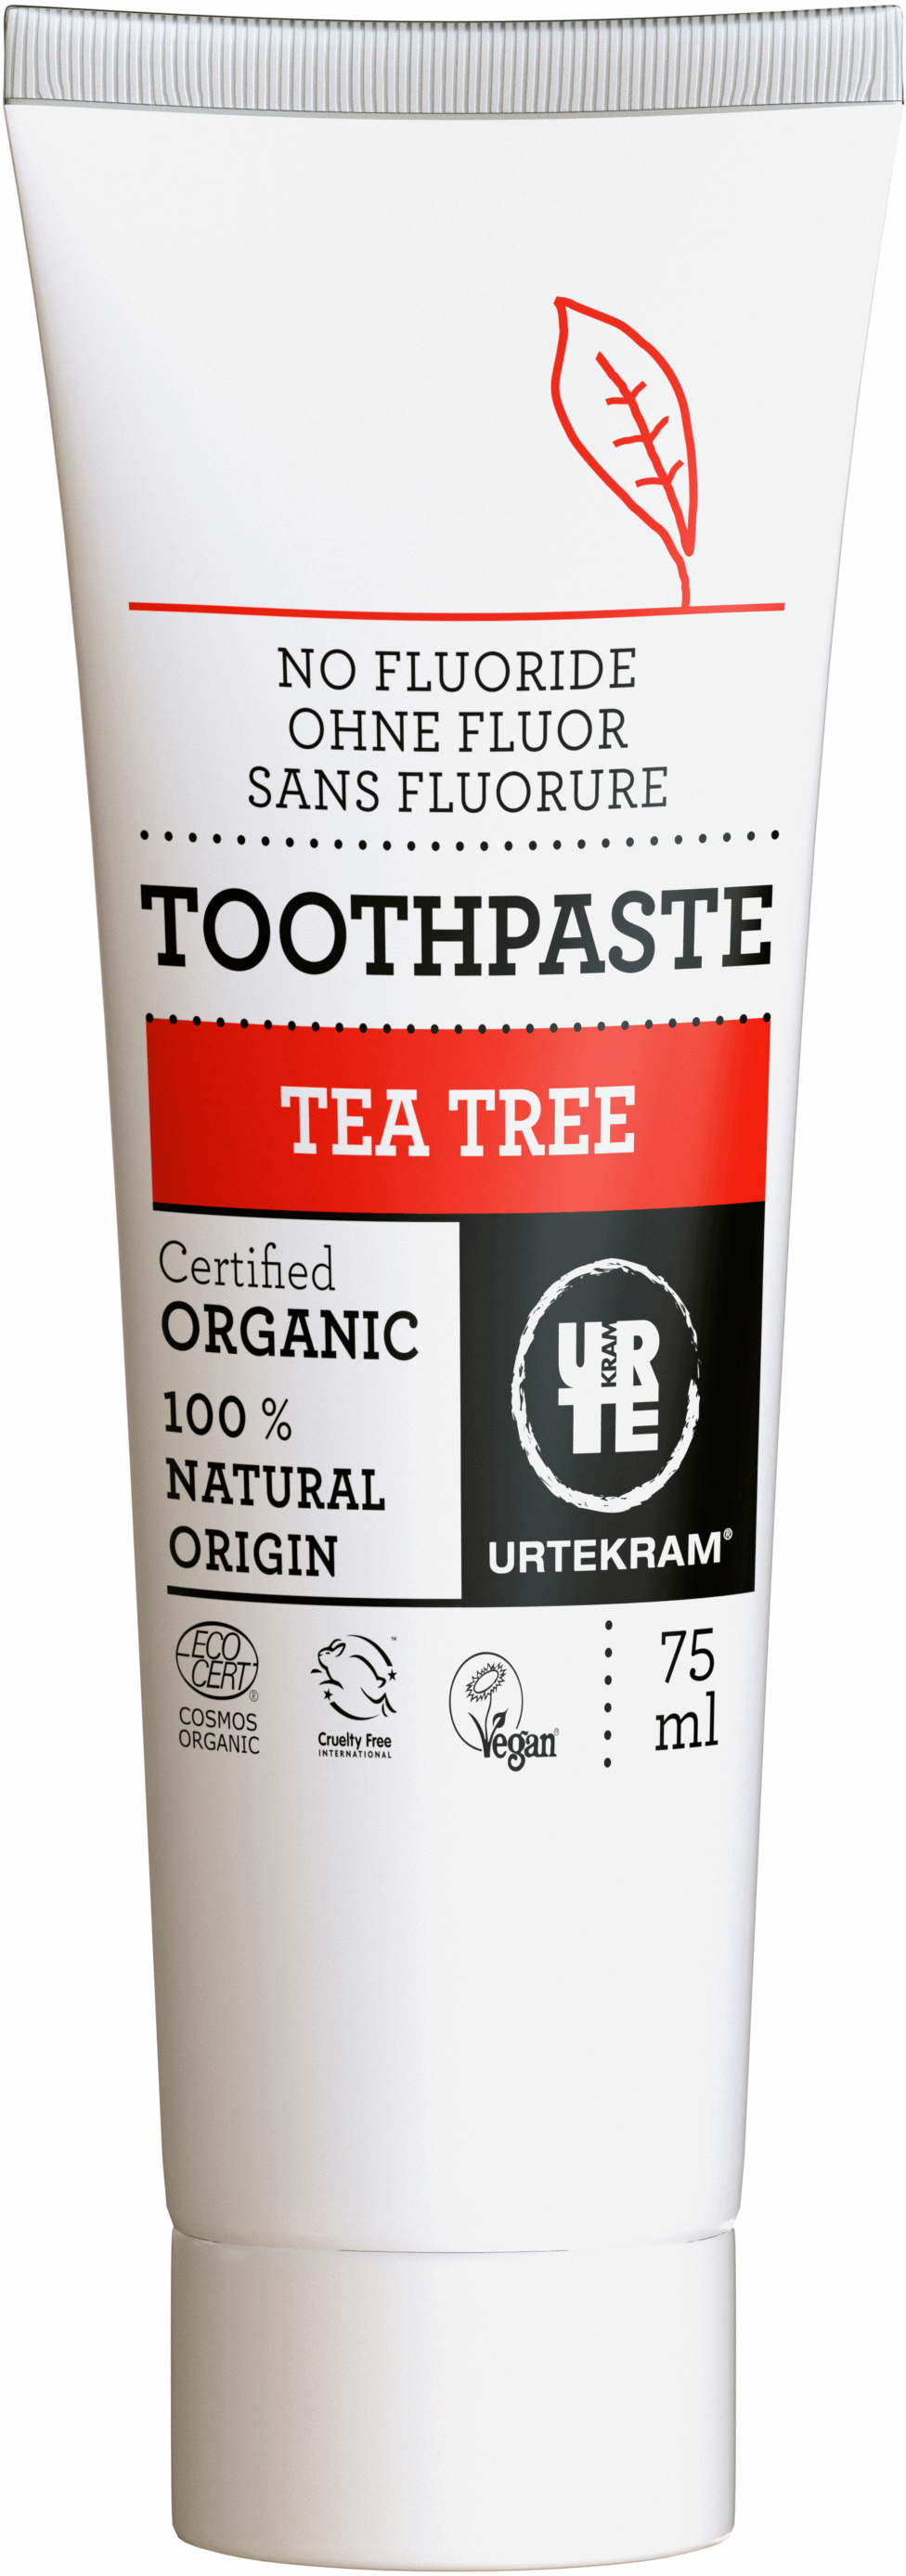 Toothpaste Tea Tree